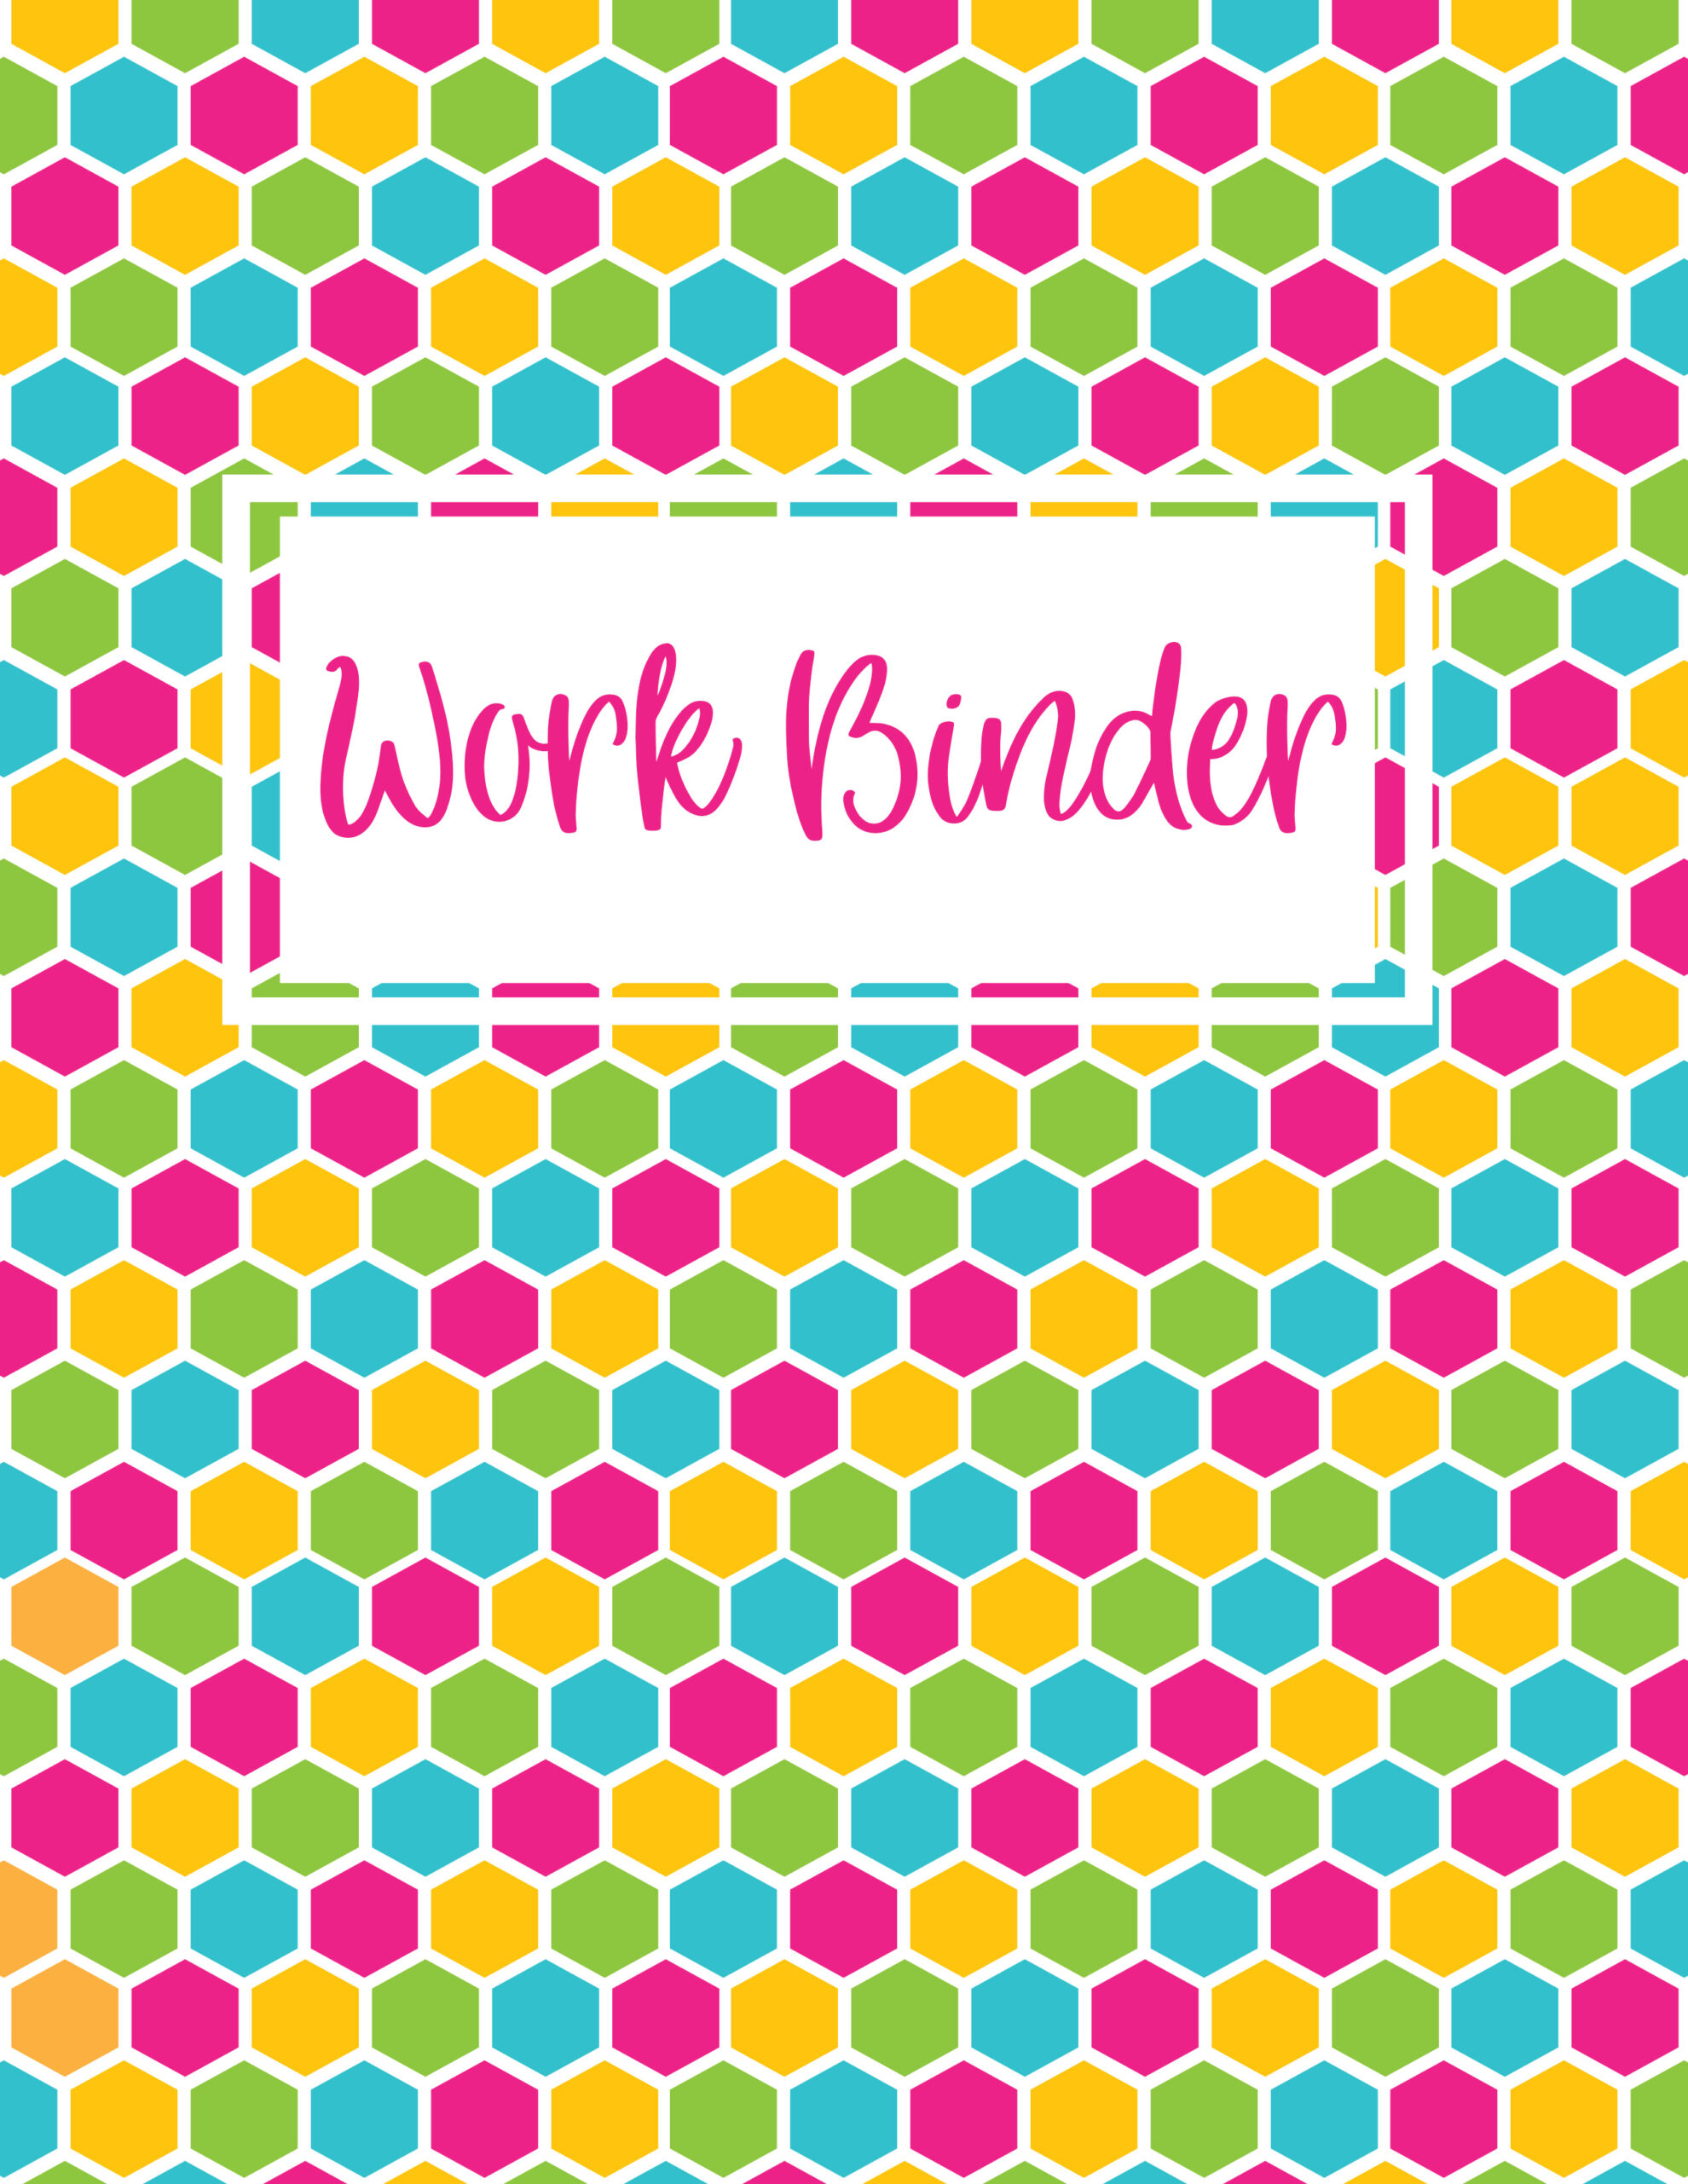 Work Binder